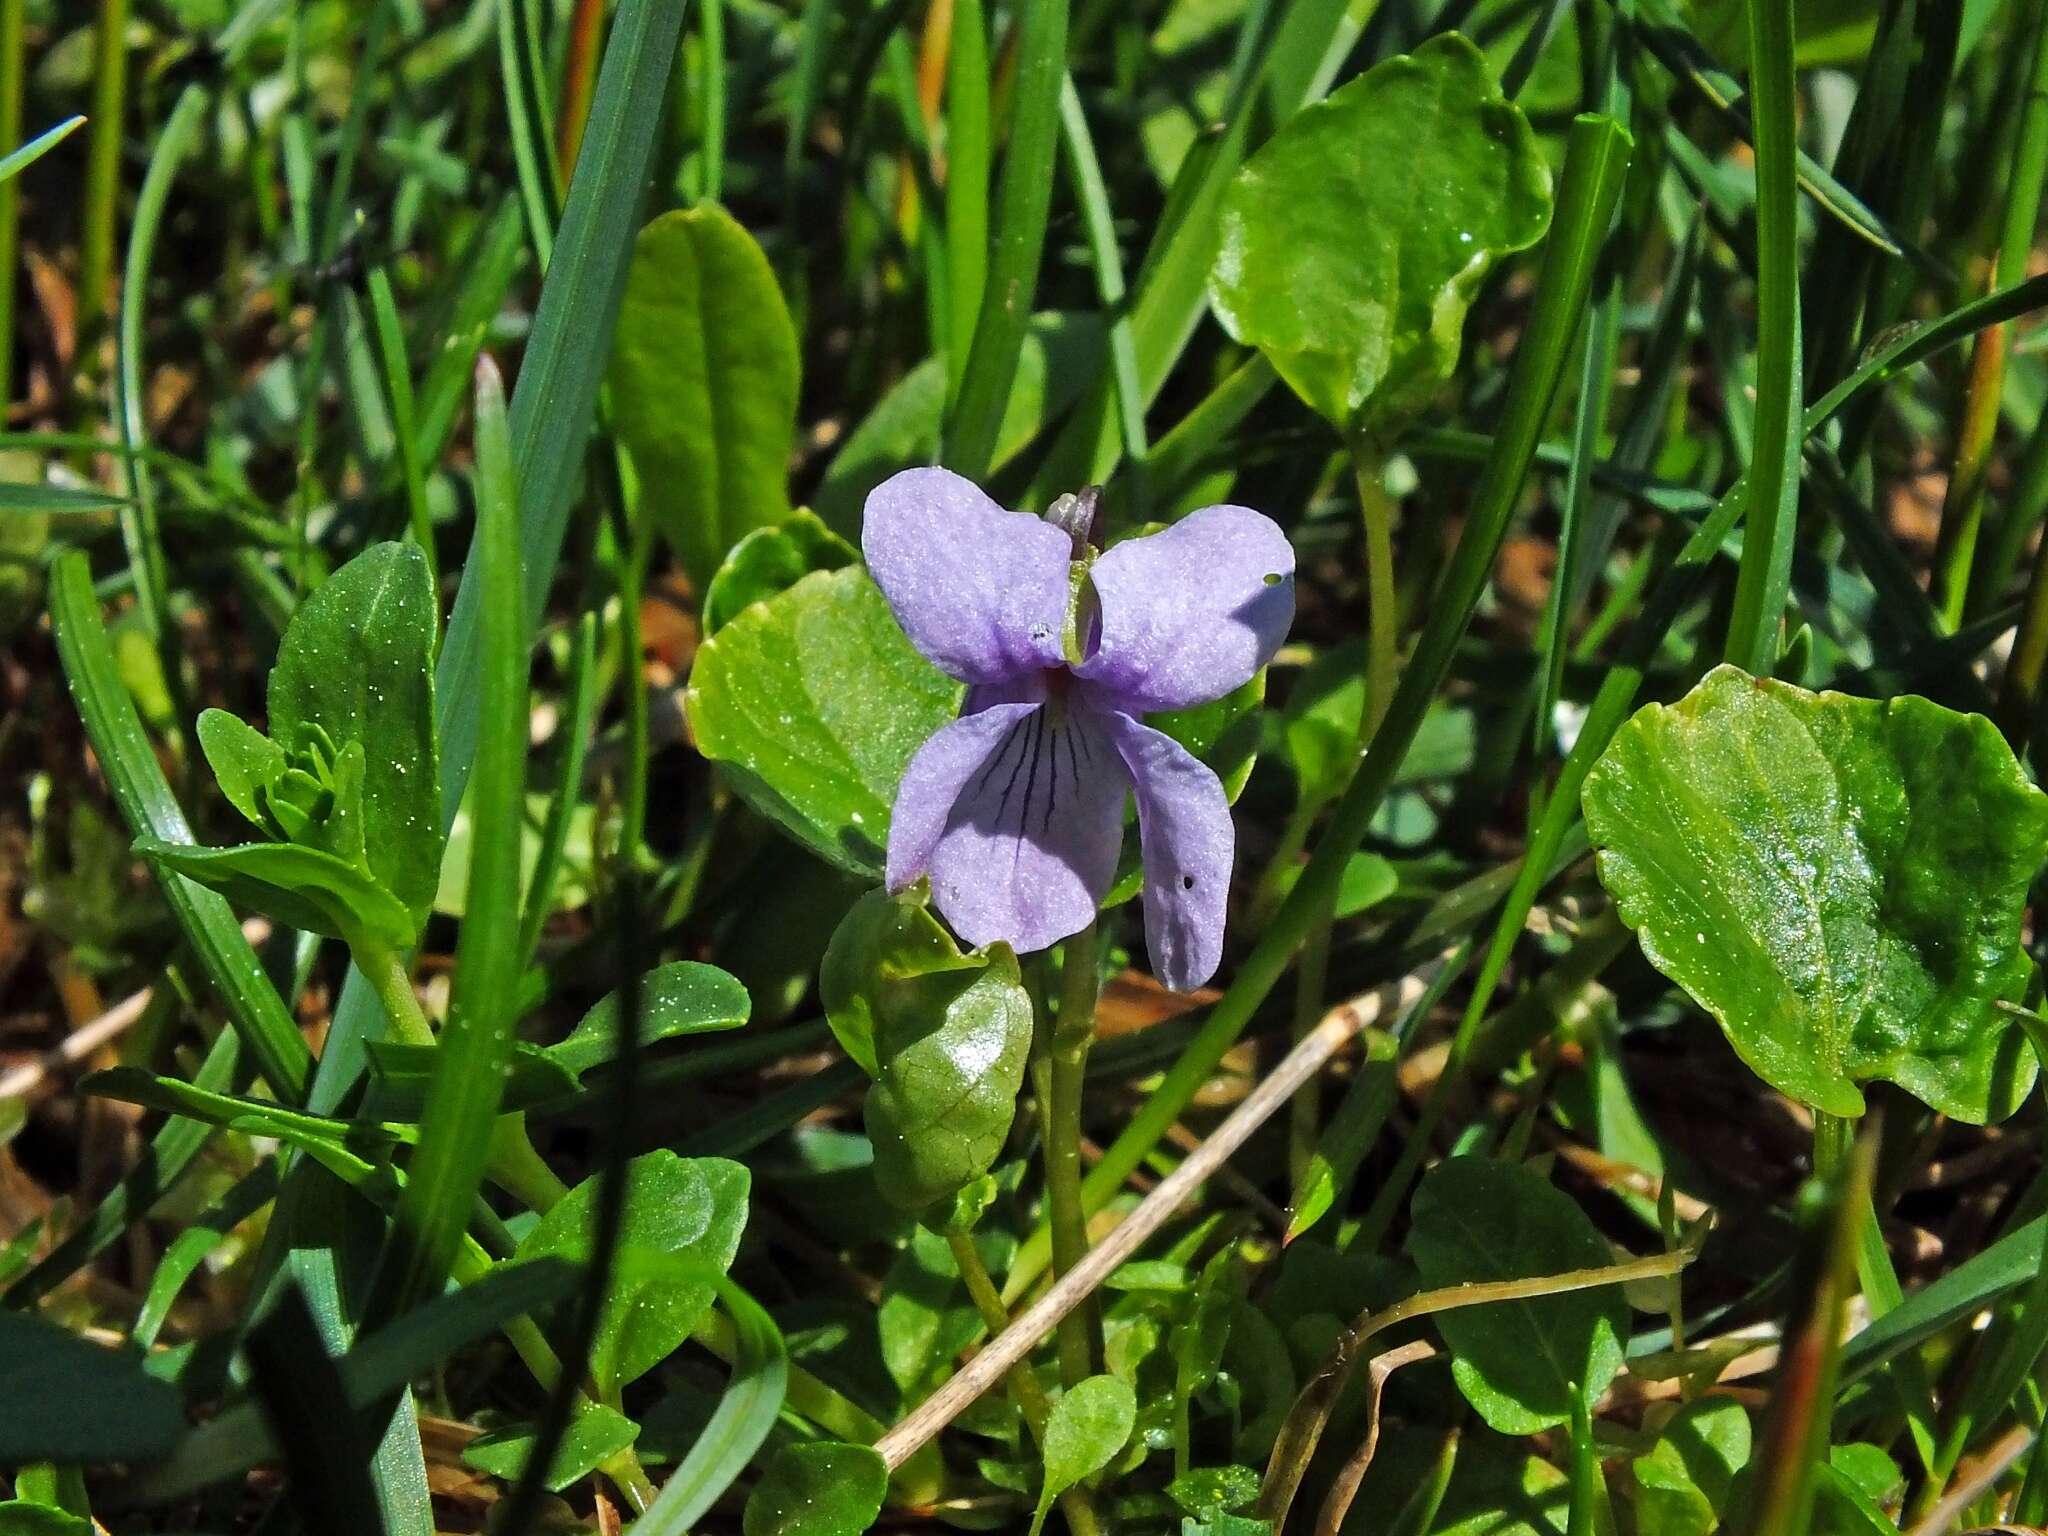 Image of dwarf marsh violet